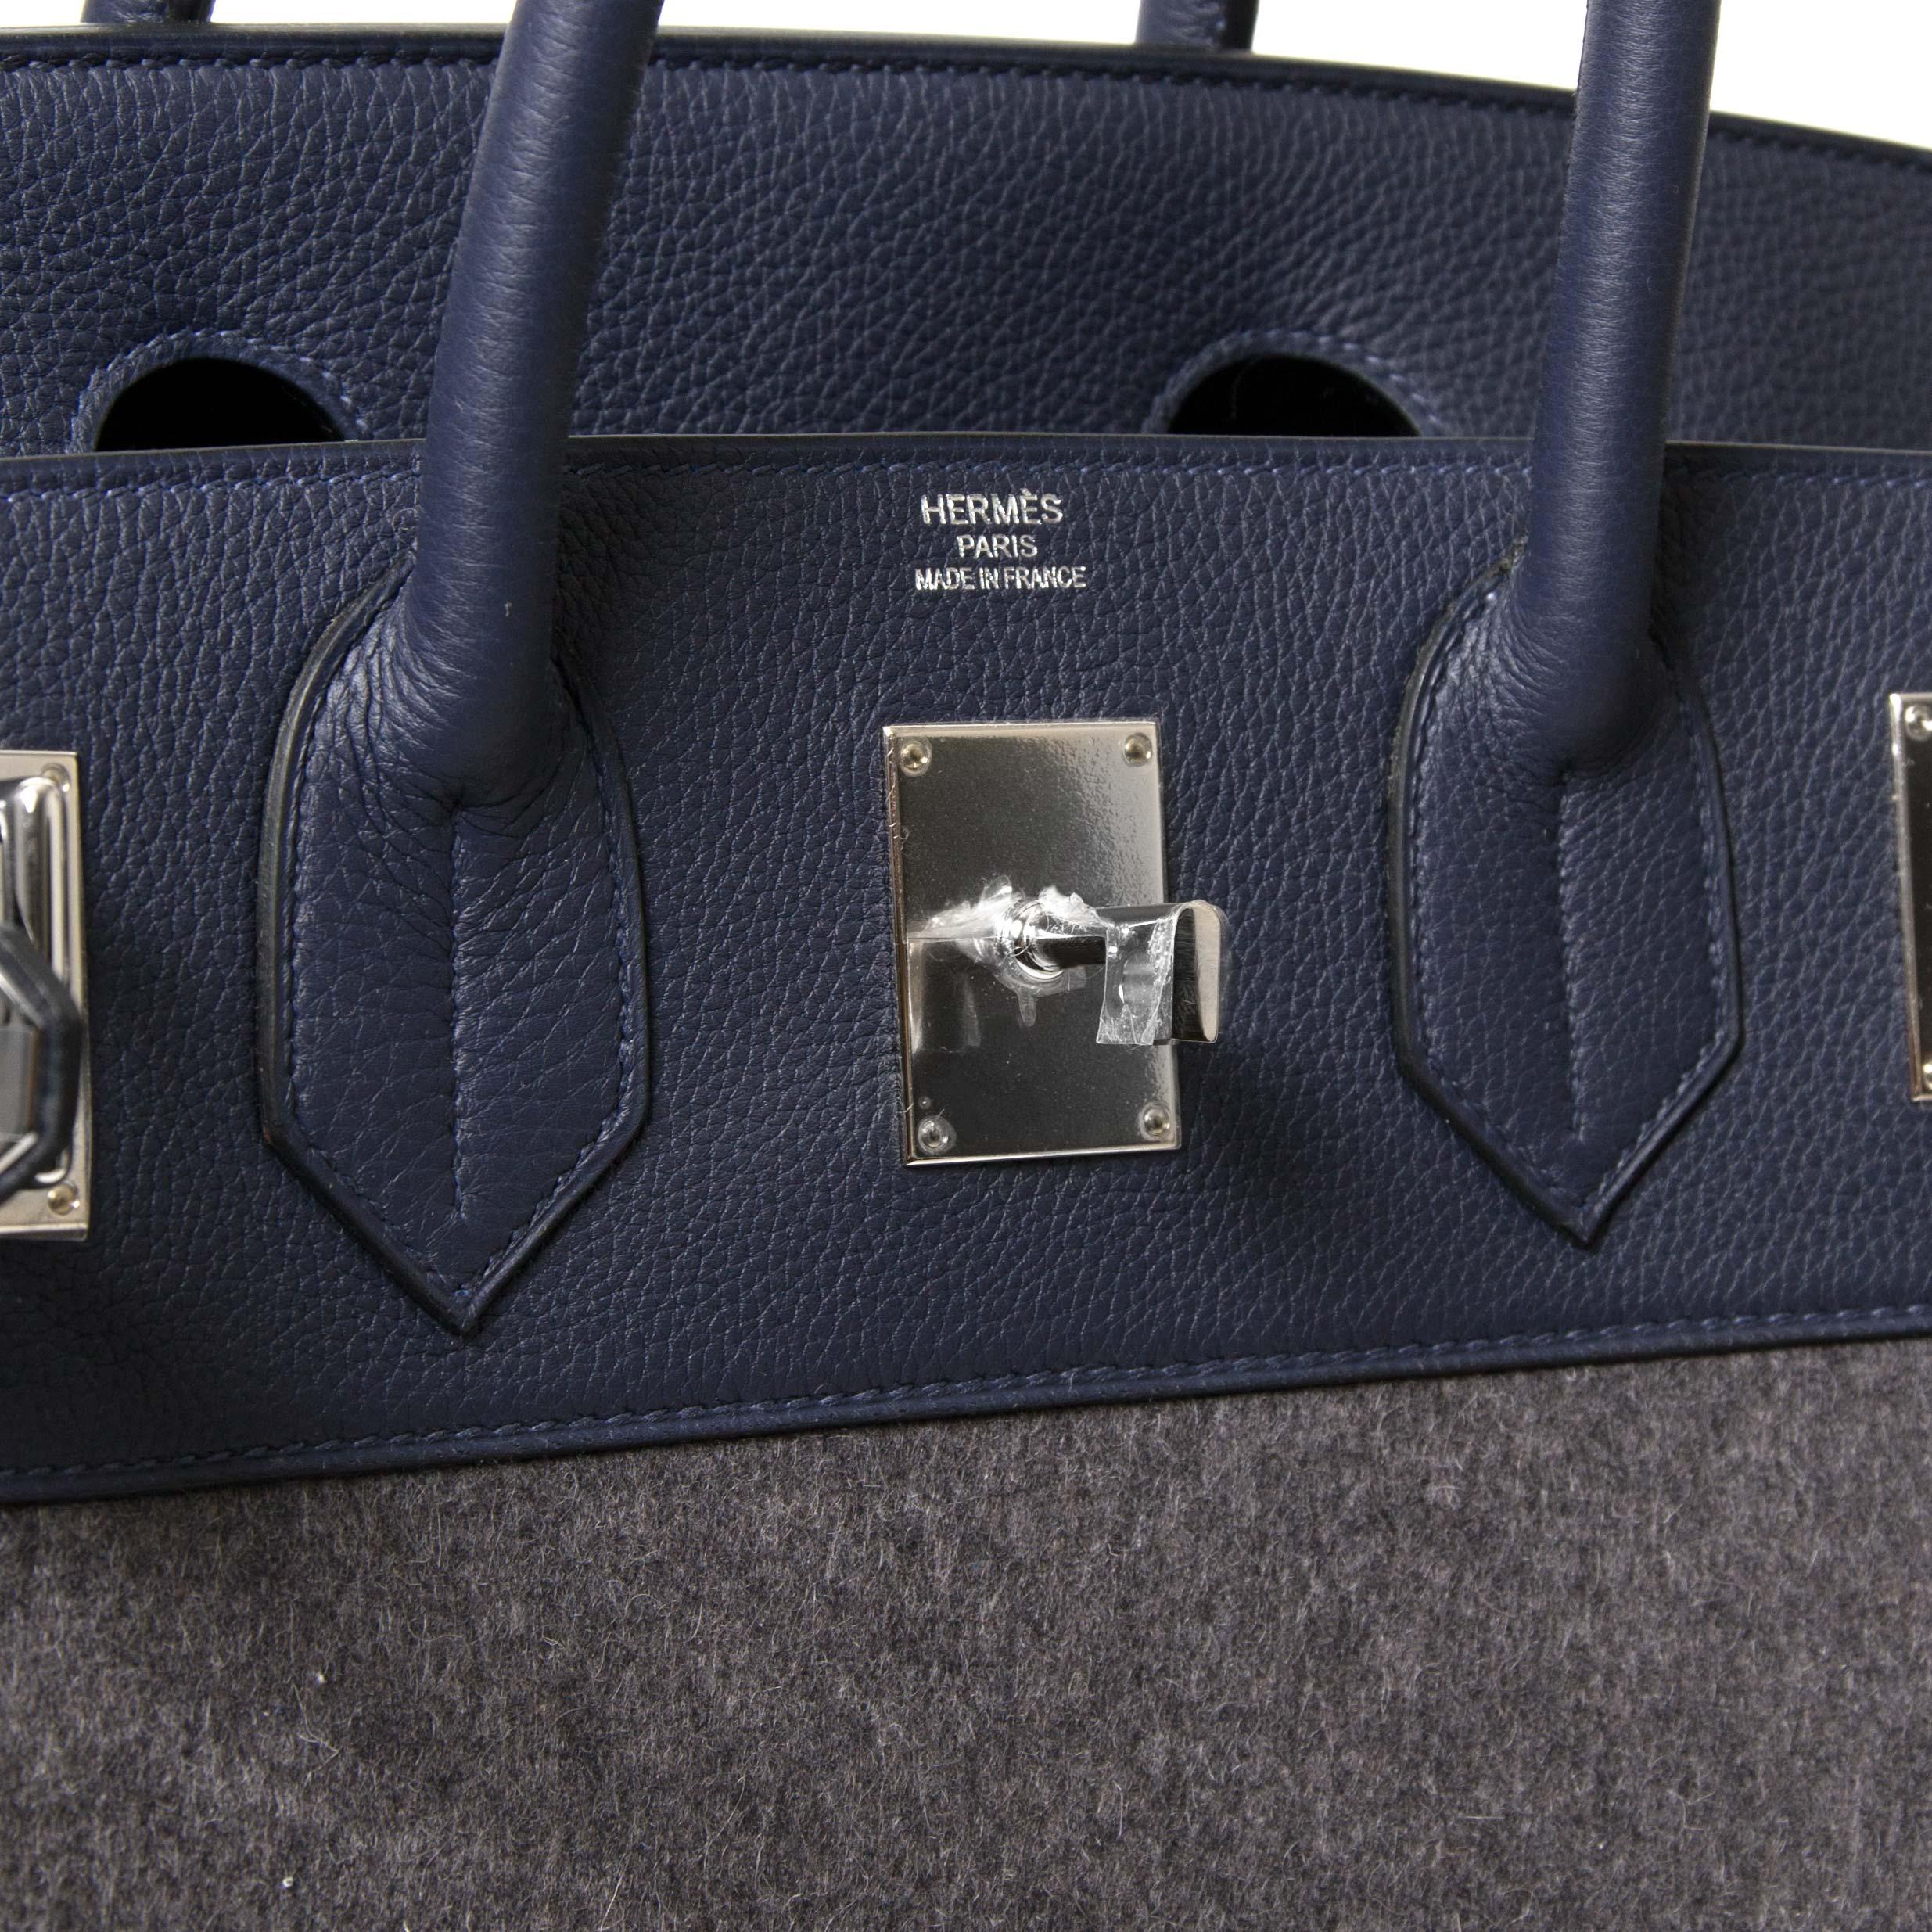 Diese extrem seltene Hermès Birkin 40 HAC Bag ist die ultimative Reisetasche. Die Tasche mit dem Namen Haut a Courroies (HAC):: was so viel wie 